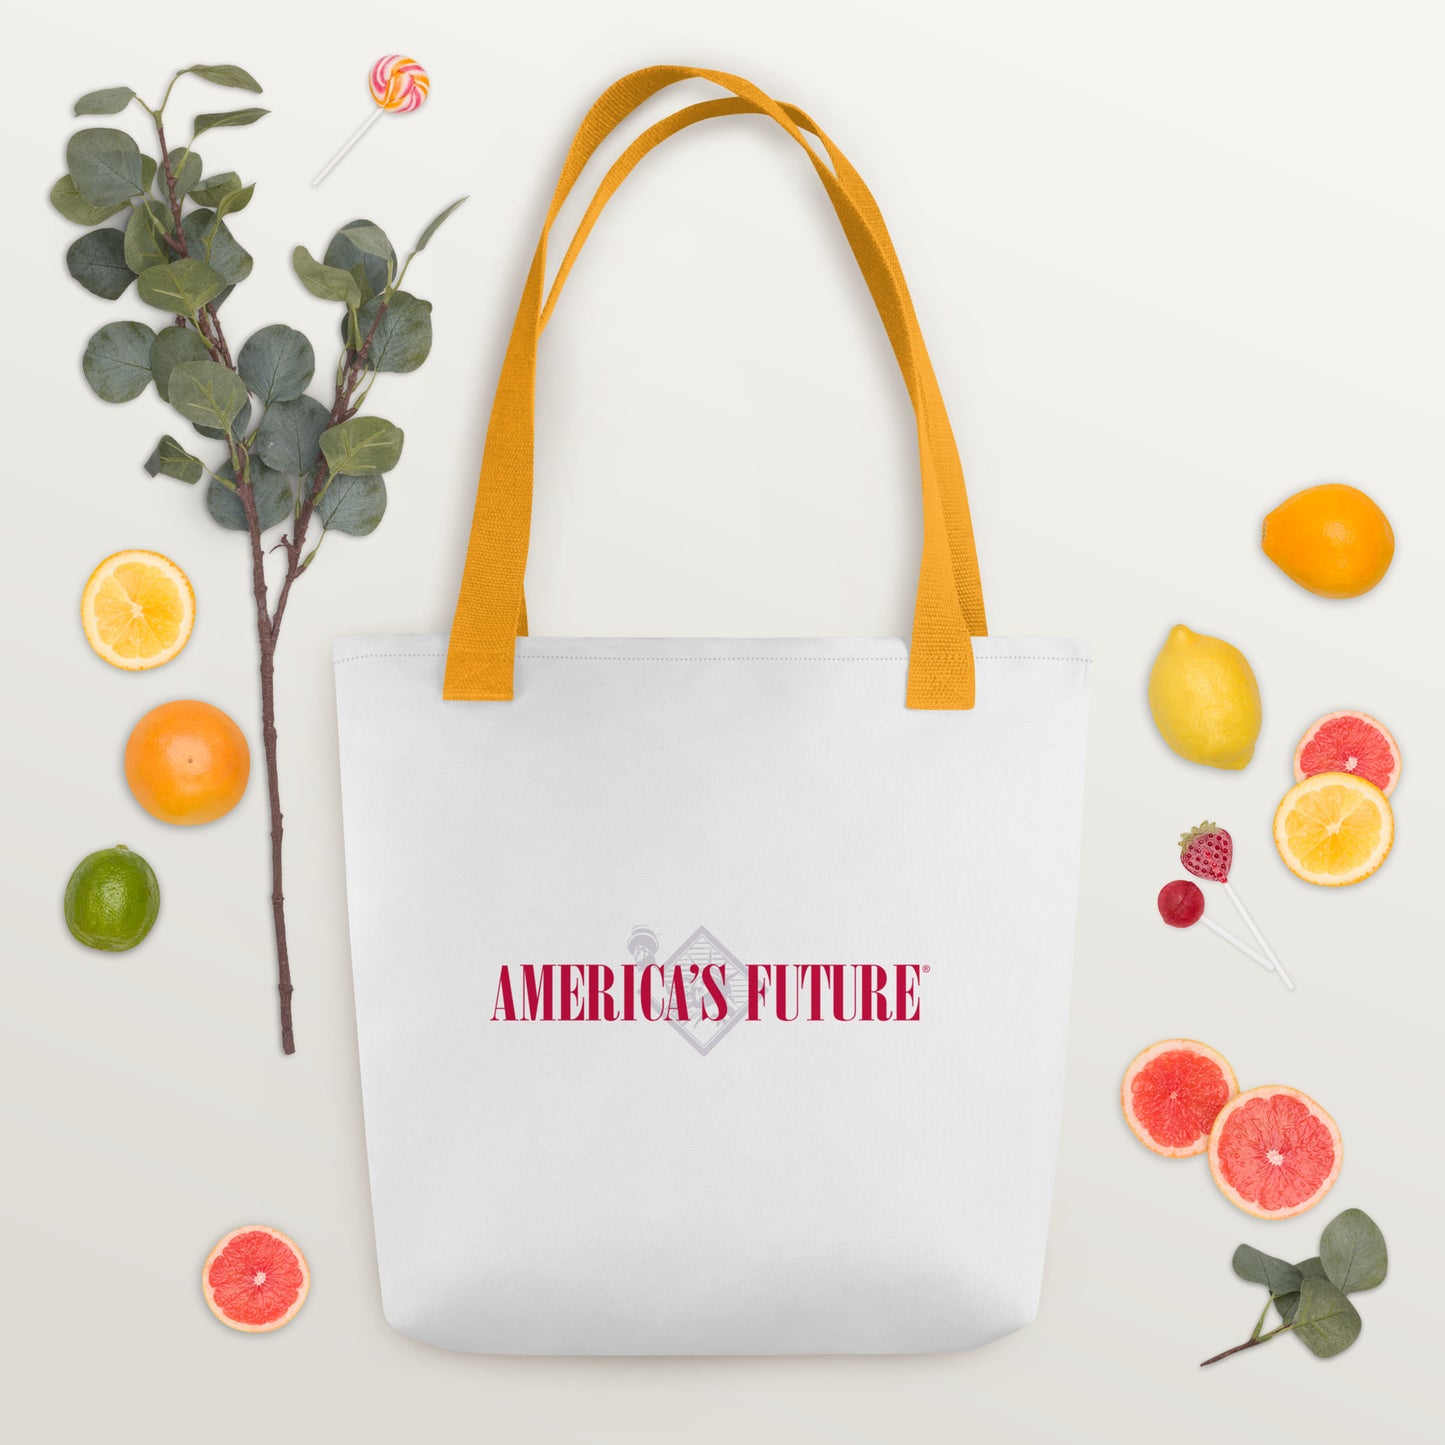 America's Future - Tote bag